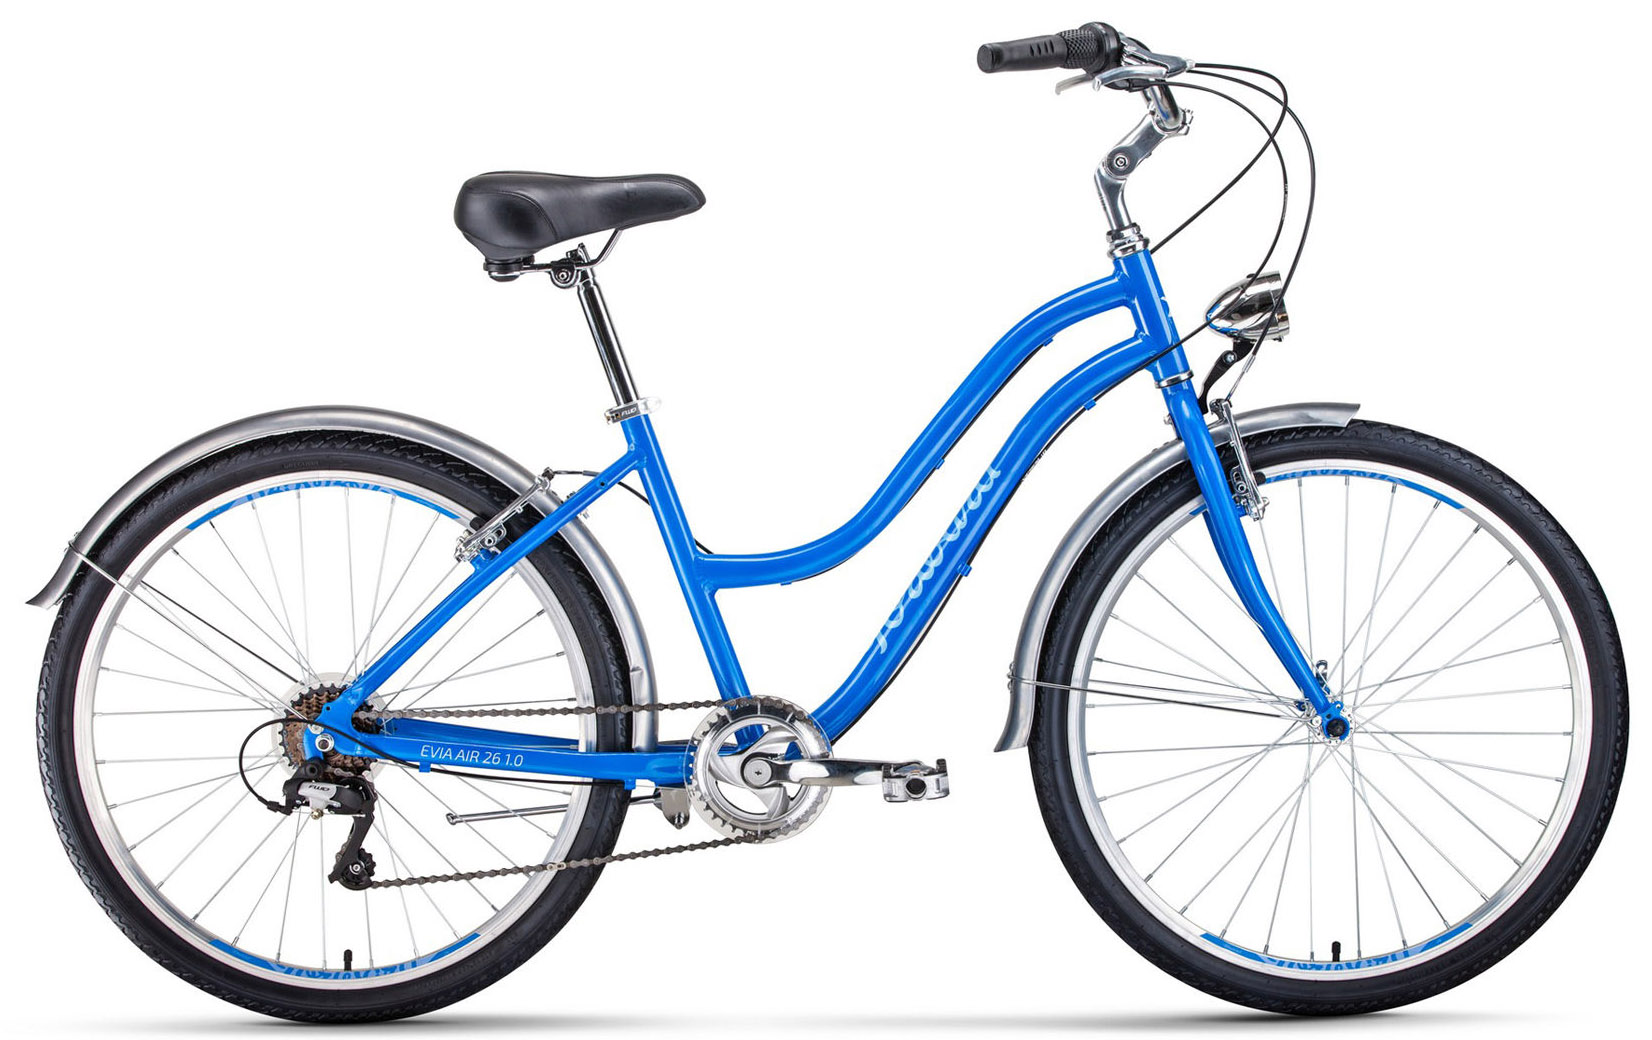  Отзывы о Женском велосипеде Forward Evia Air 26 1.0 2020